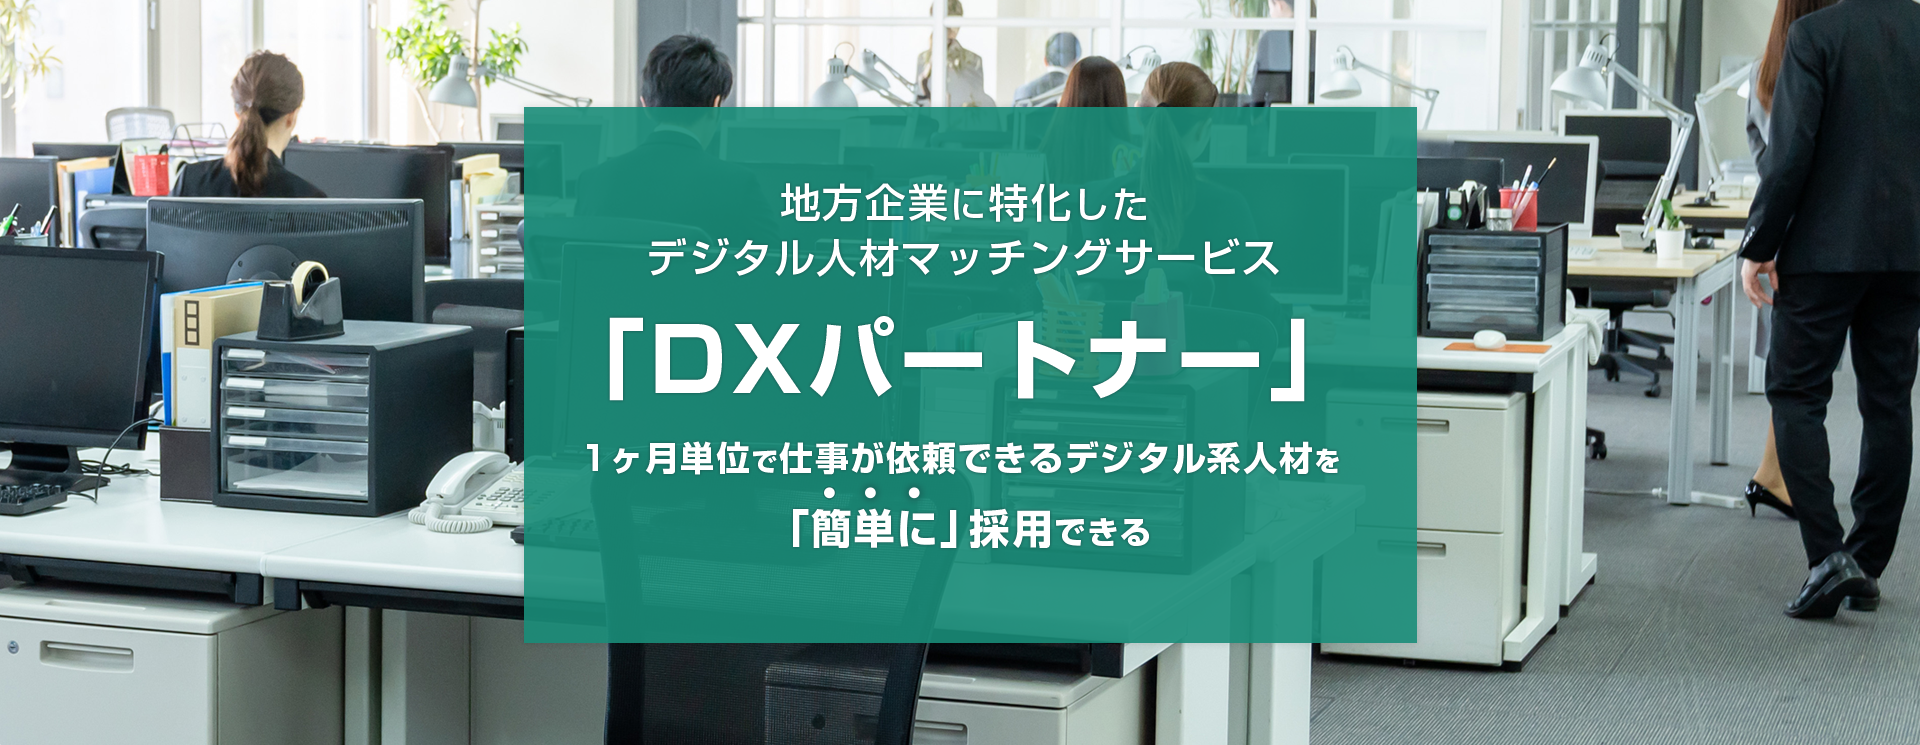 地方企業に特化したデジタル人材マッチングサービス「DXパートナー」 1ヶ月単位で仕事が依頼できるデジタル系人材を「簡単に」採用できる